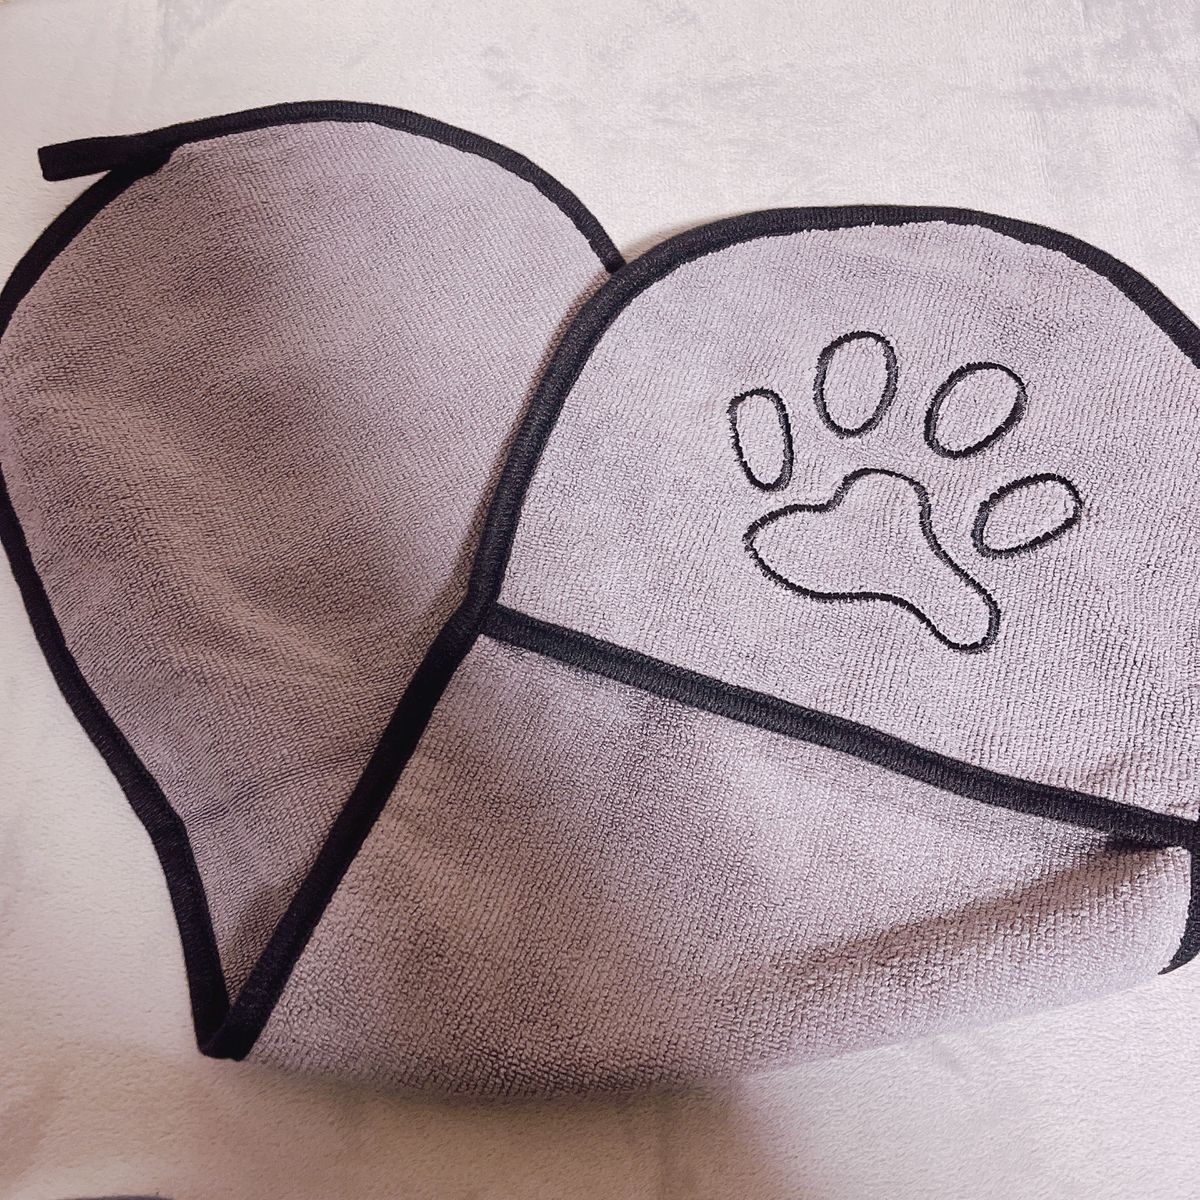 犬 バスタオル 速乾 マイクロ ファイバー 吸水タオル 猫用タオル ペット用 手袋構造 使いやすい 体拭き 柔らかい 猫 体拭き